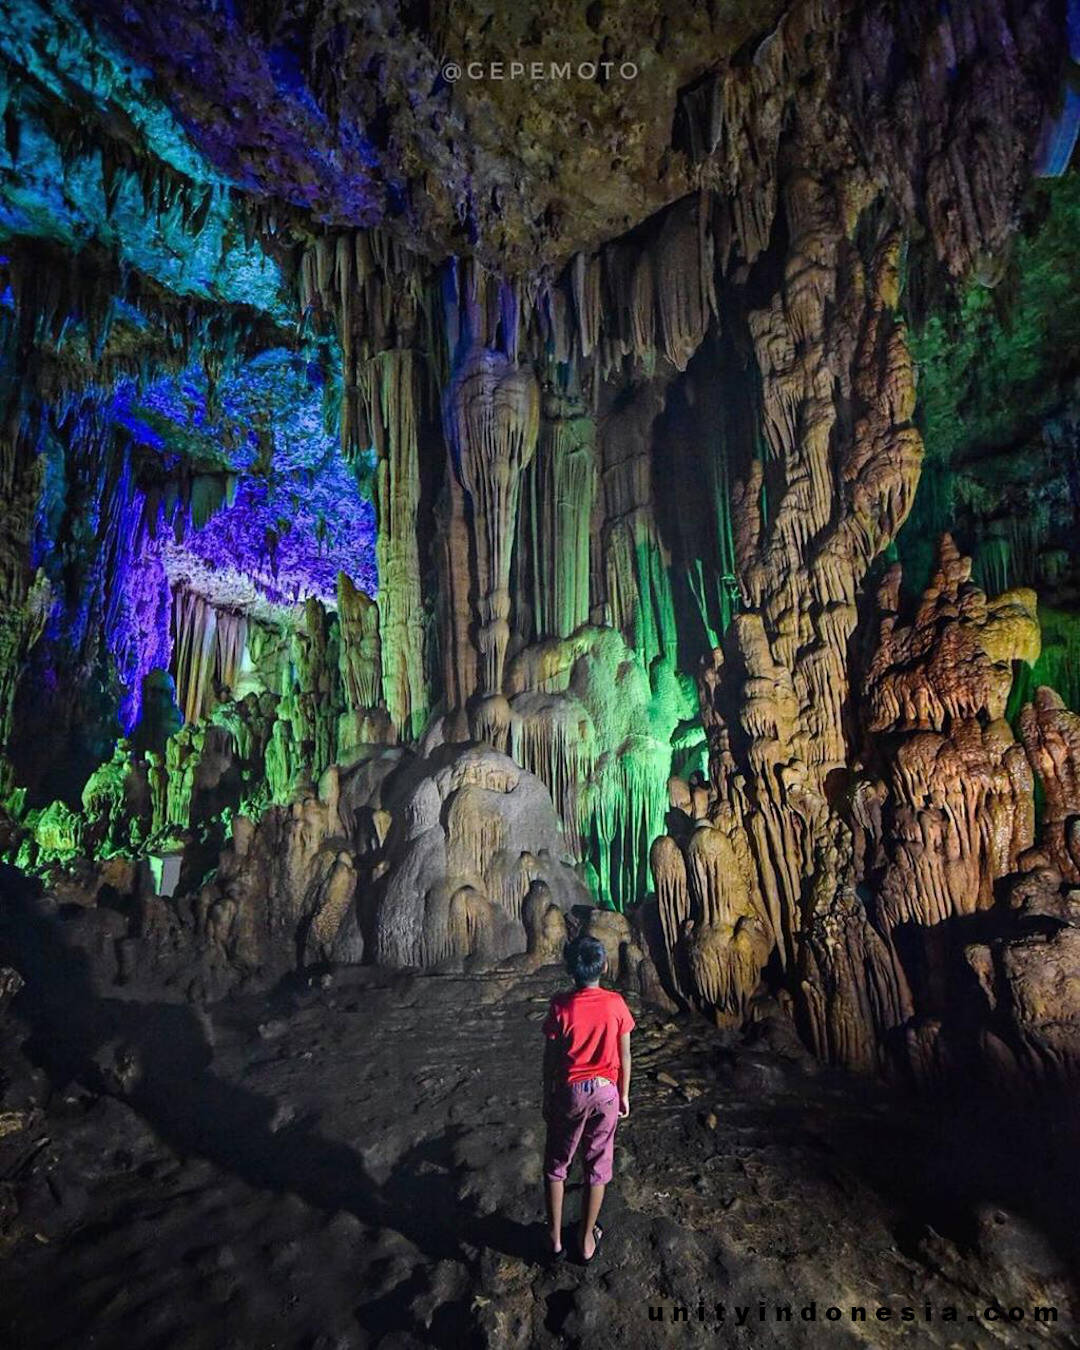 Exploring the Gong Cave. Courtesy of Gilang Permana: @gepemoto